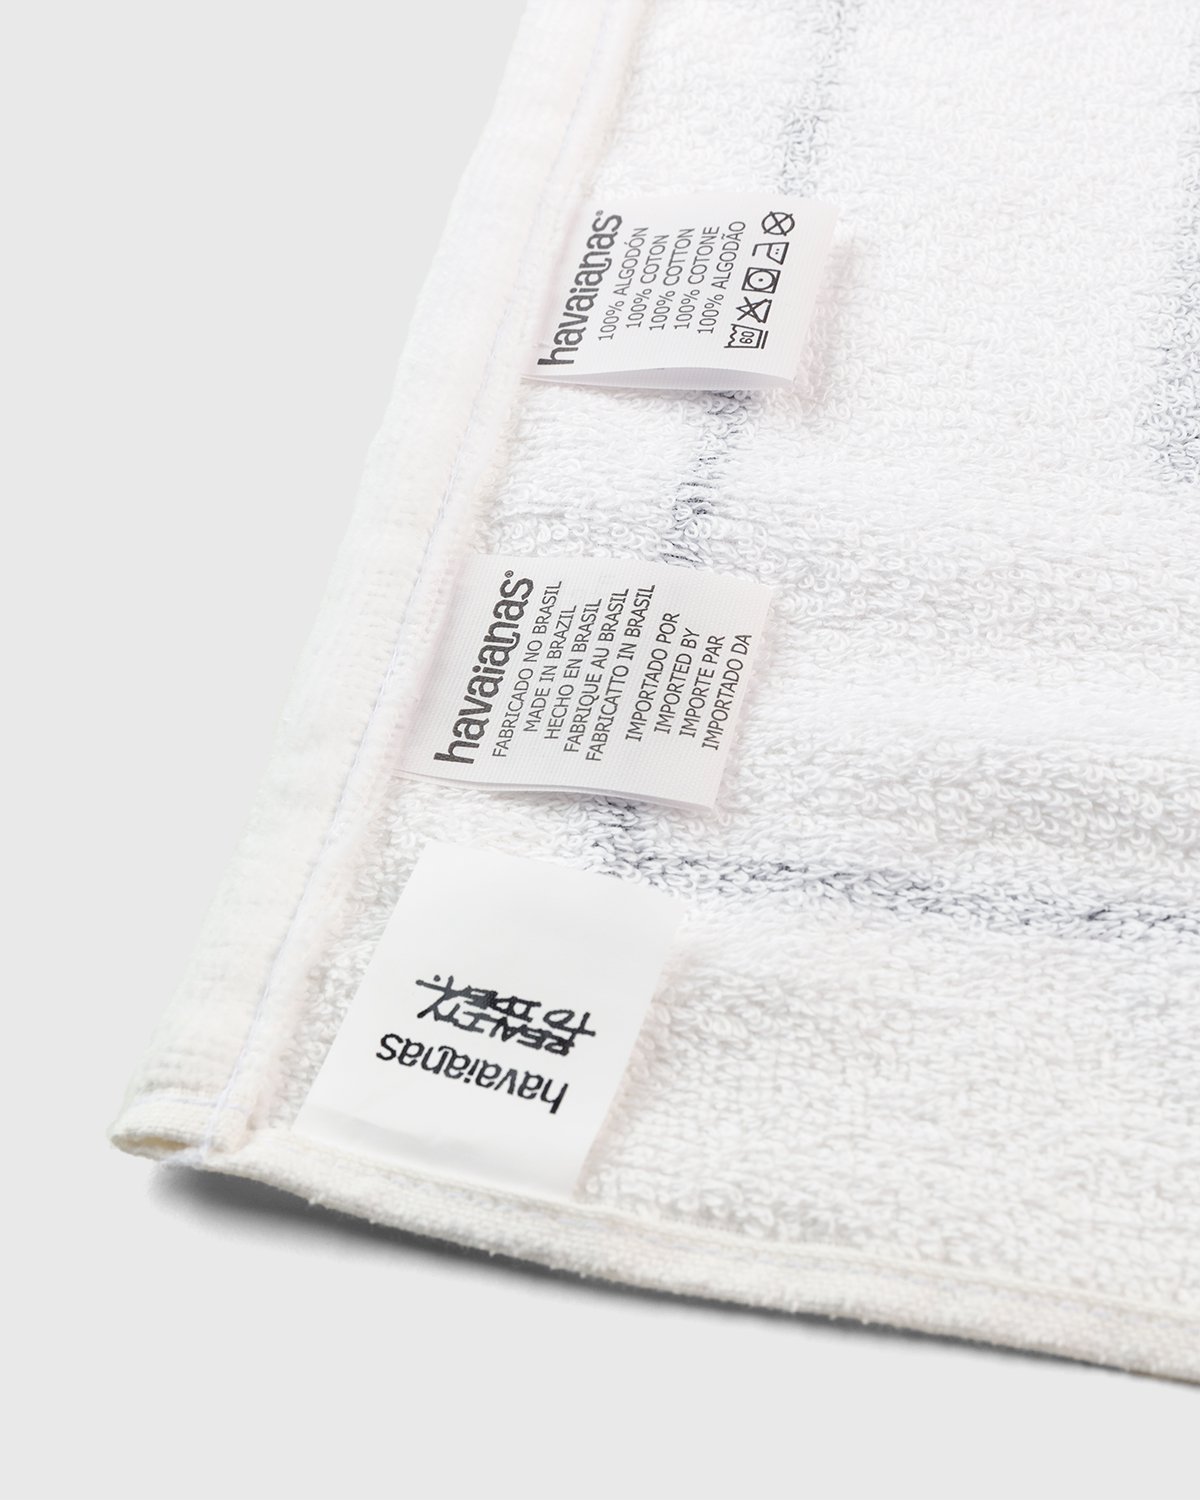 havaianas - Reality to Idea by Joshuas Vides Towel White - Lifestyle - White - Image 5